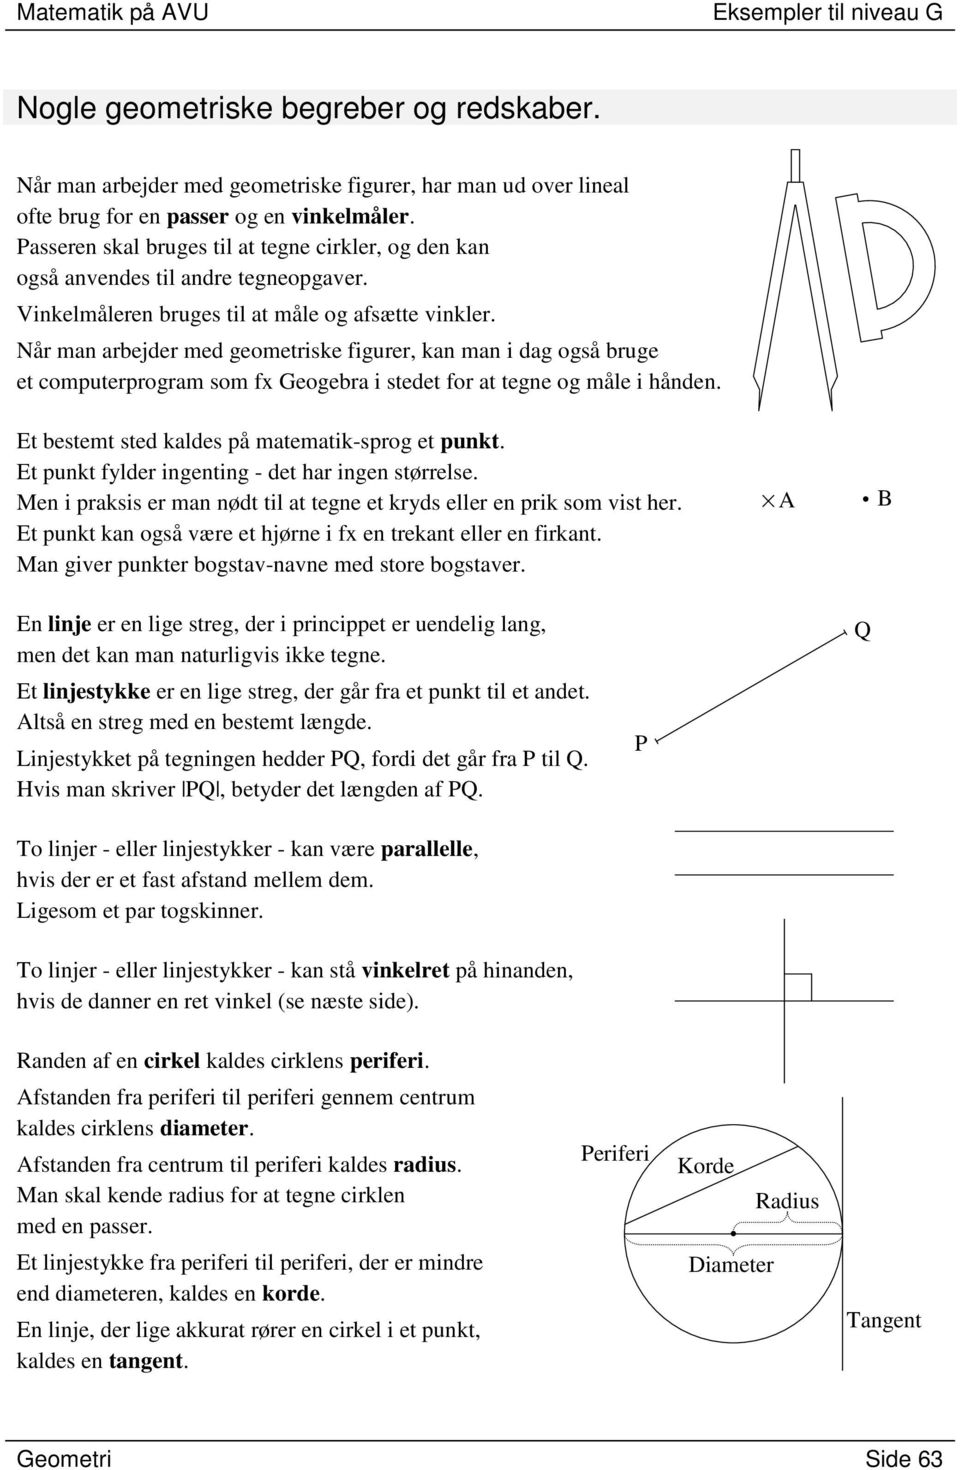 Når man arbejder med geometriske figurer, kan man i dag også bruge et computerprogram som fx Geogebra i stedet for at tegne og måle i hånden. Et bestemt sted kaldes på matematik-sprog et punkt.